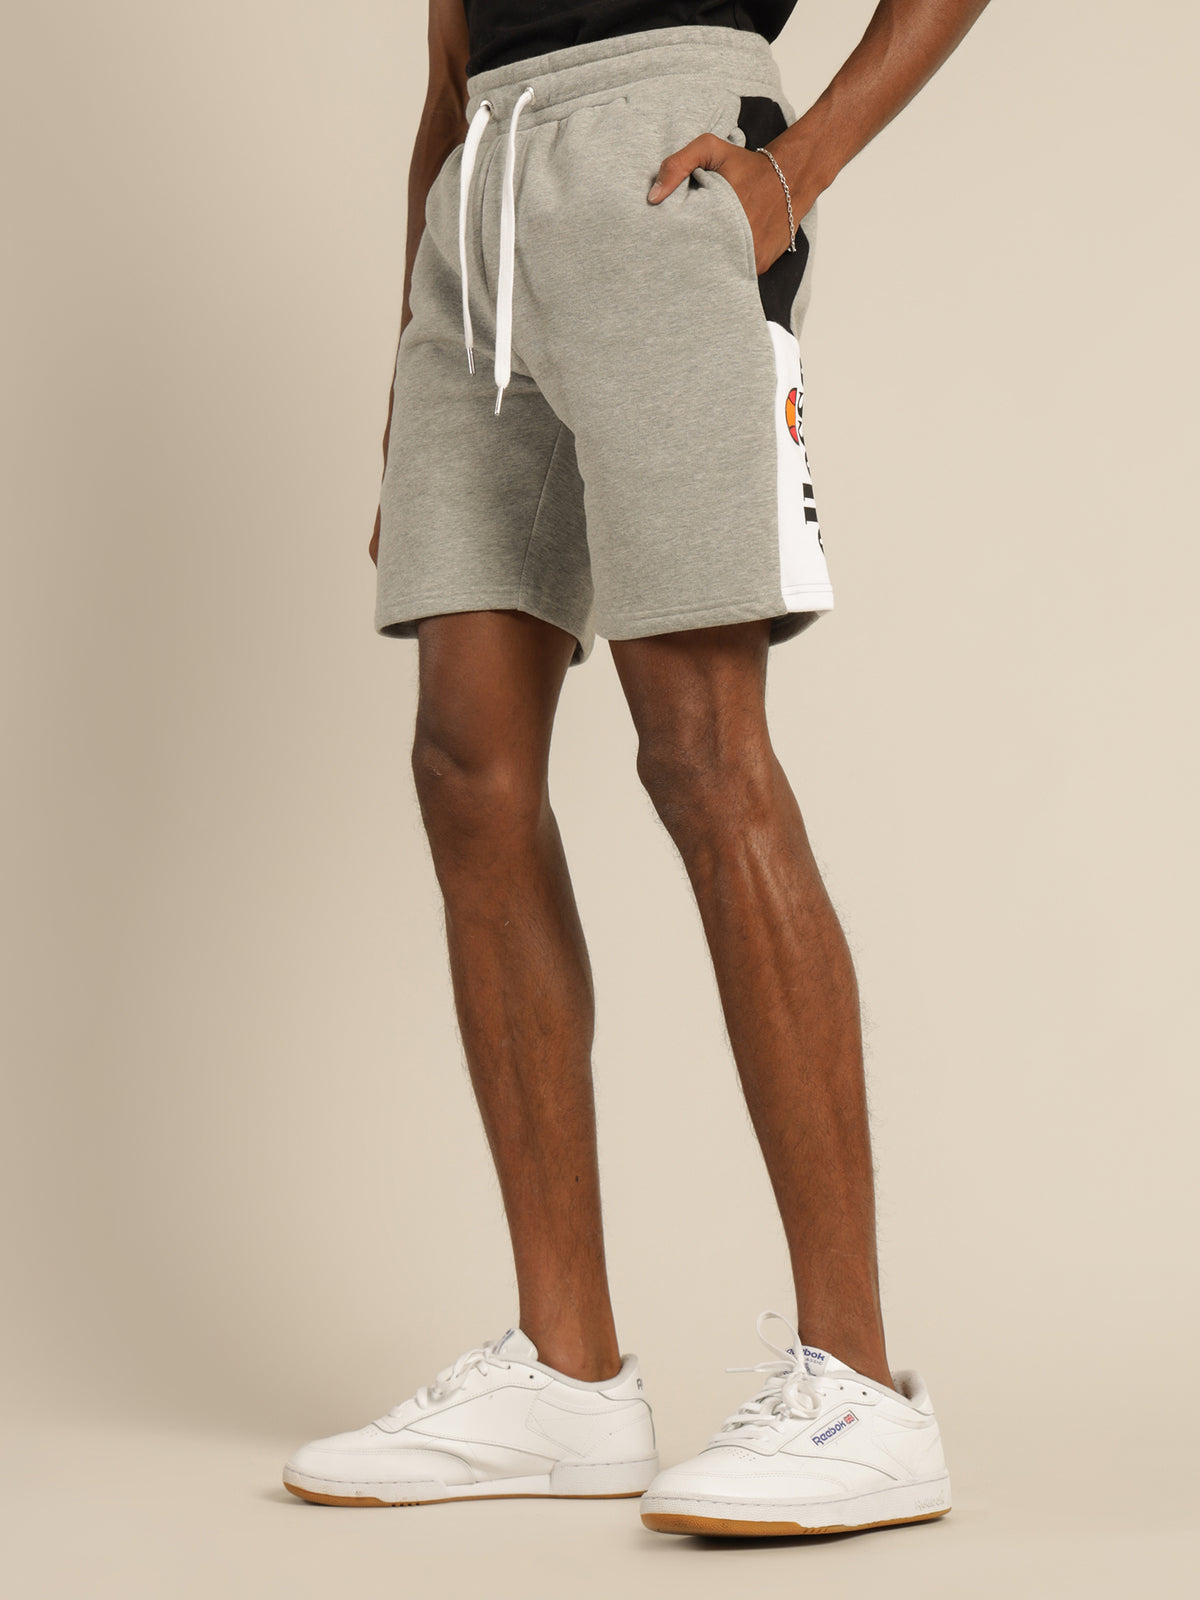 Bratani Shorts in Grey Marle